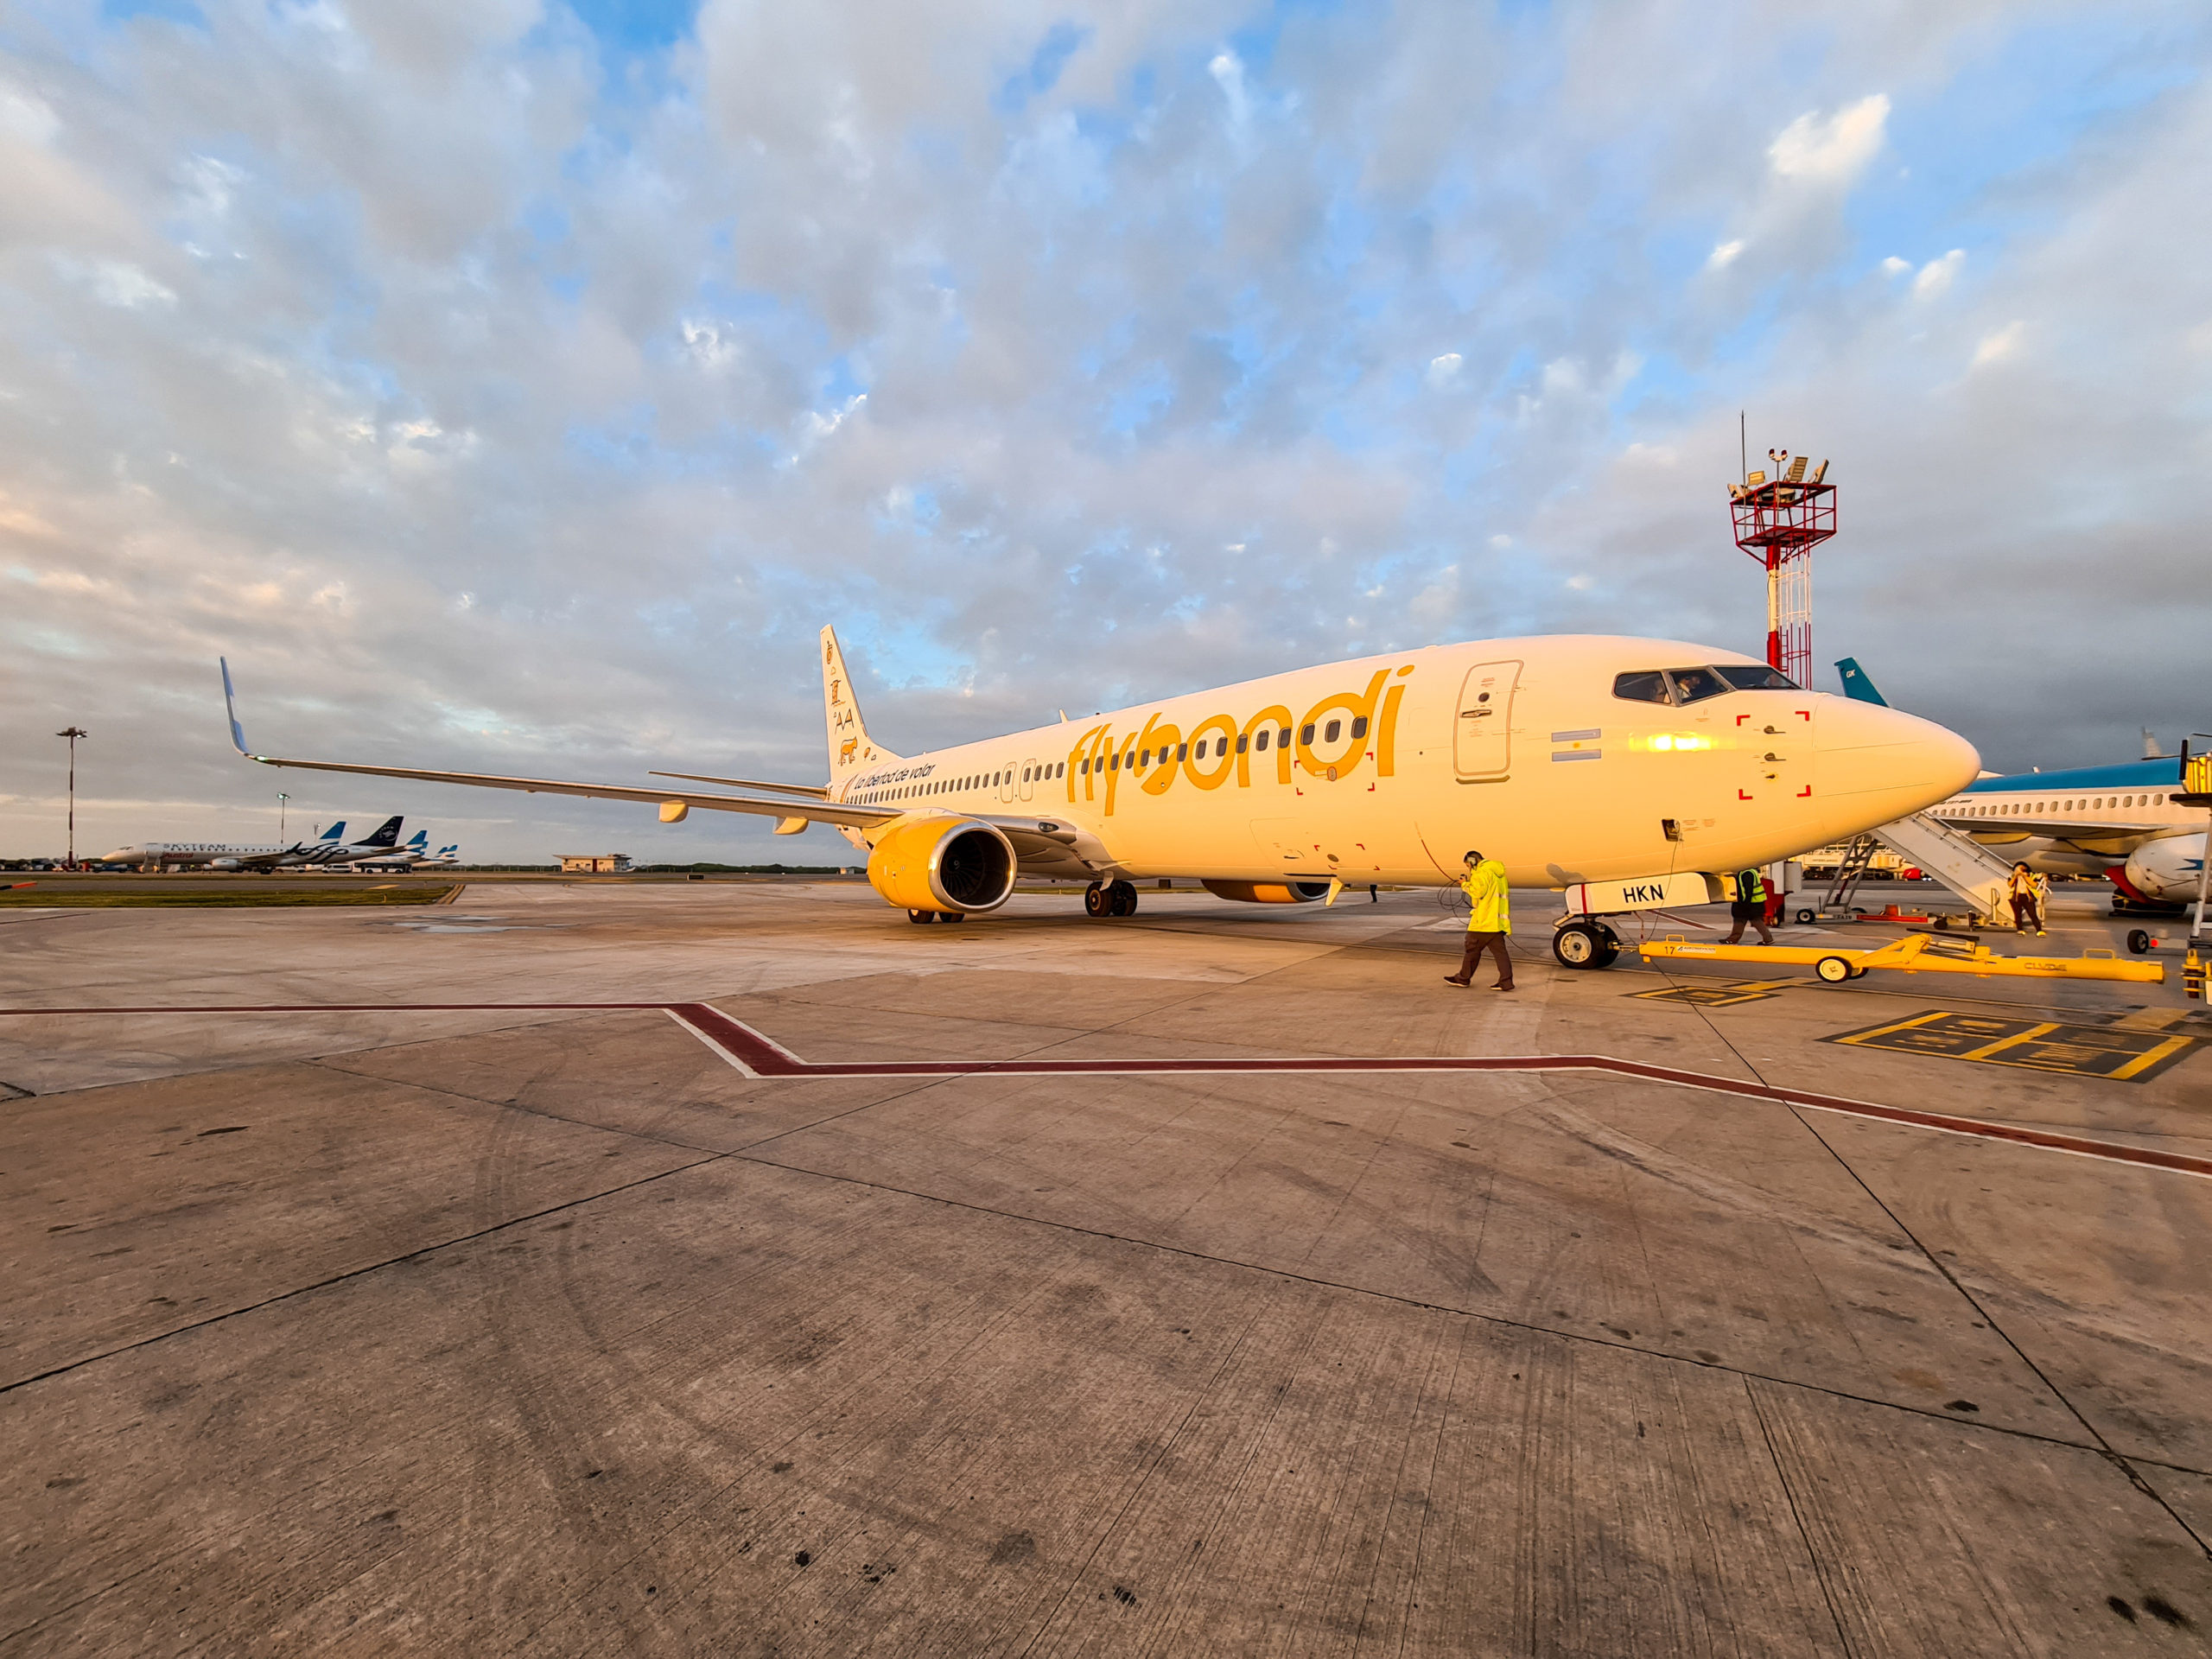 A partir del 12 de abril, Flybondi repondrá vuelos entre Córdoba y Mendoza